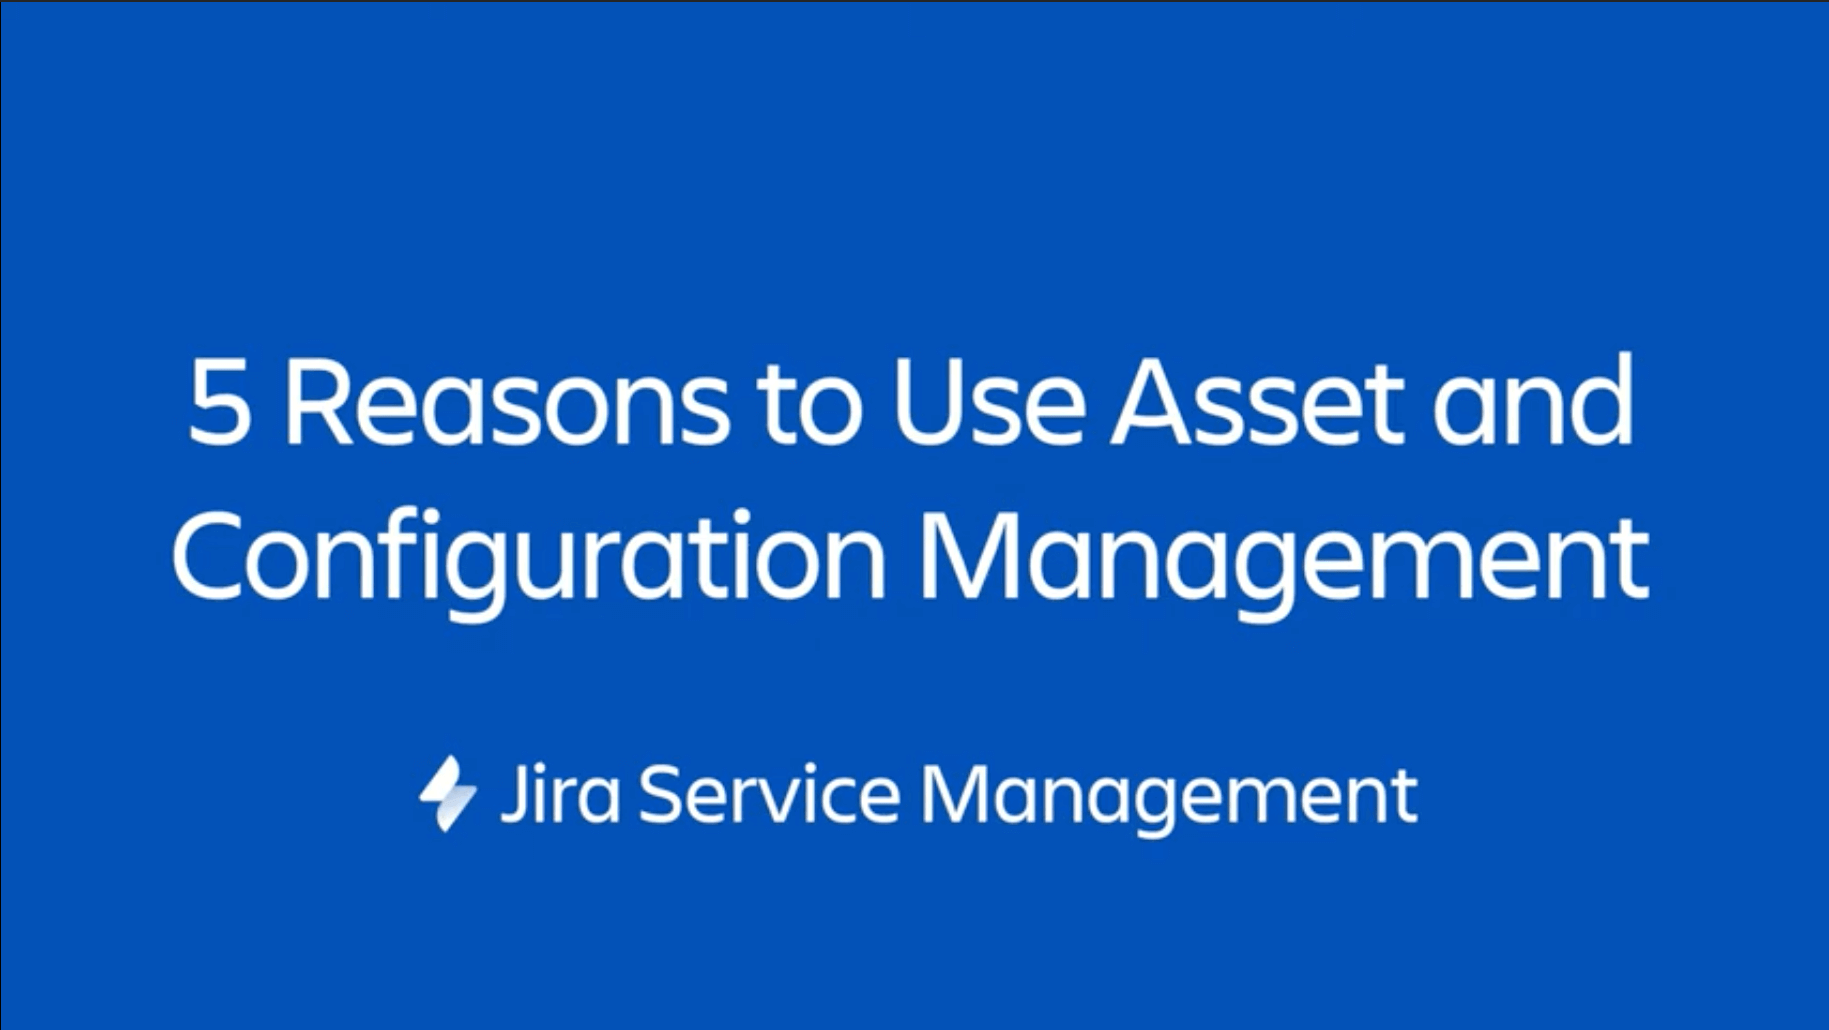 Jira Software: fai un salto di qualità con Jira Service Management